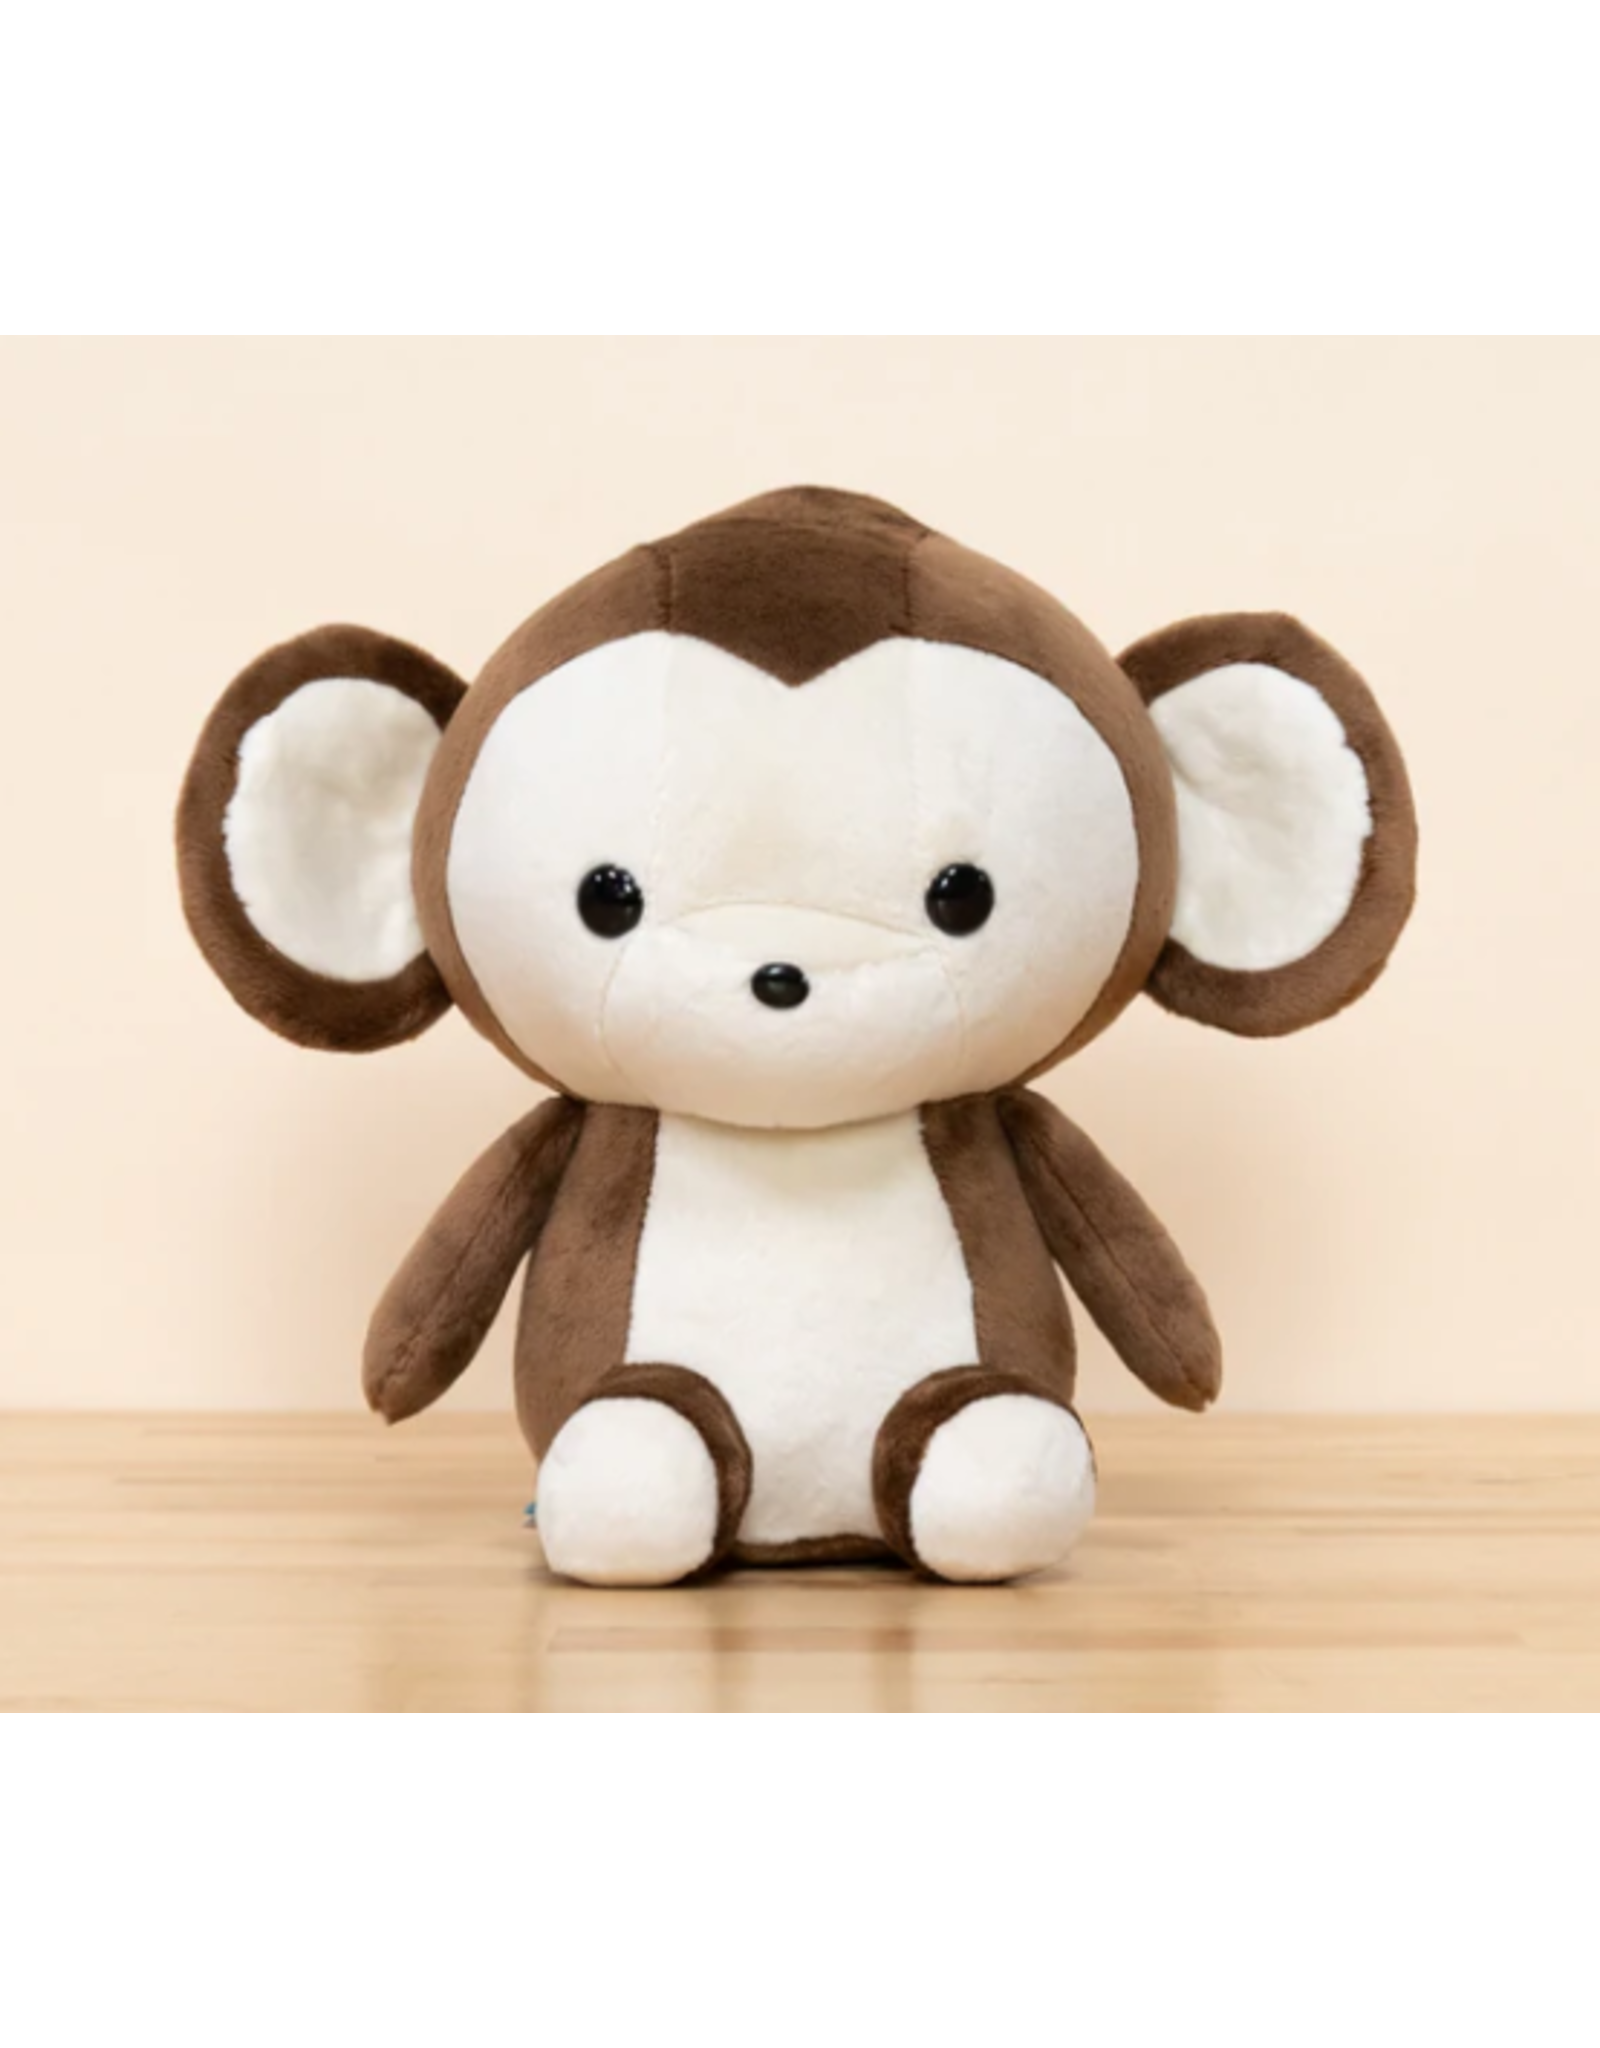 Monki the Monkey